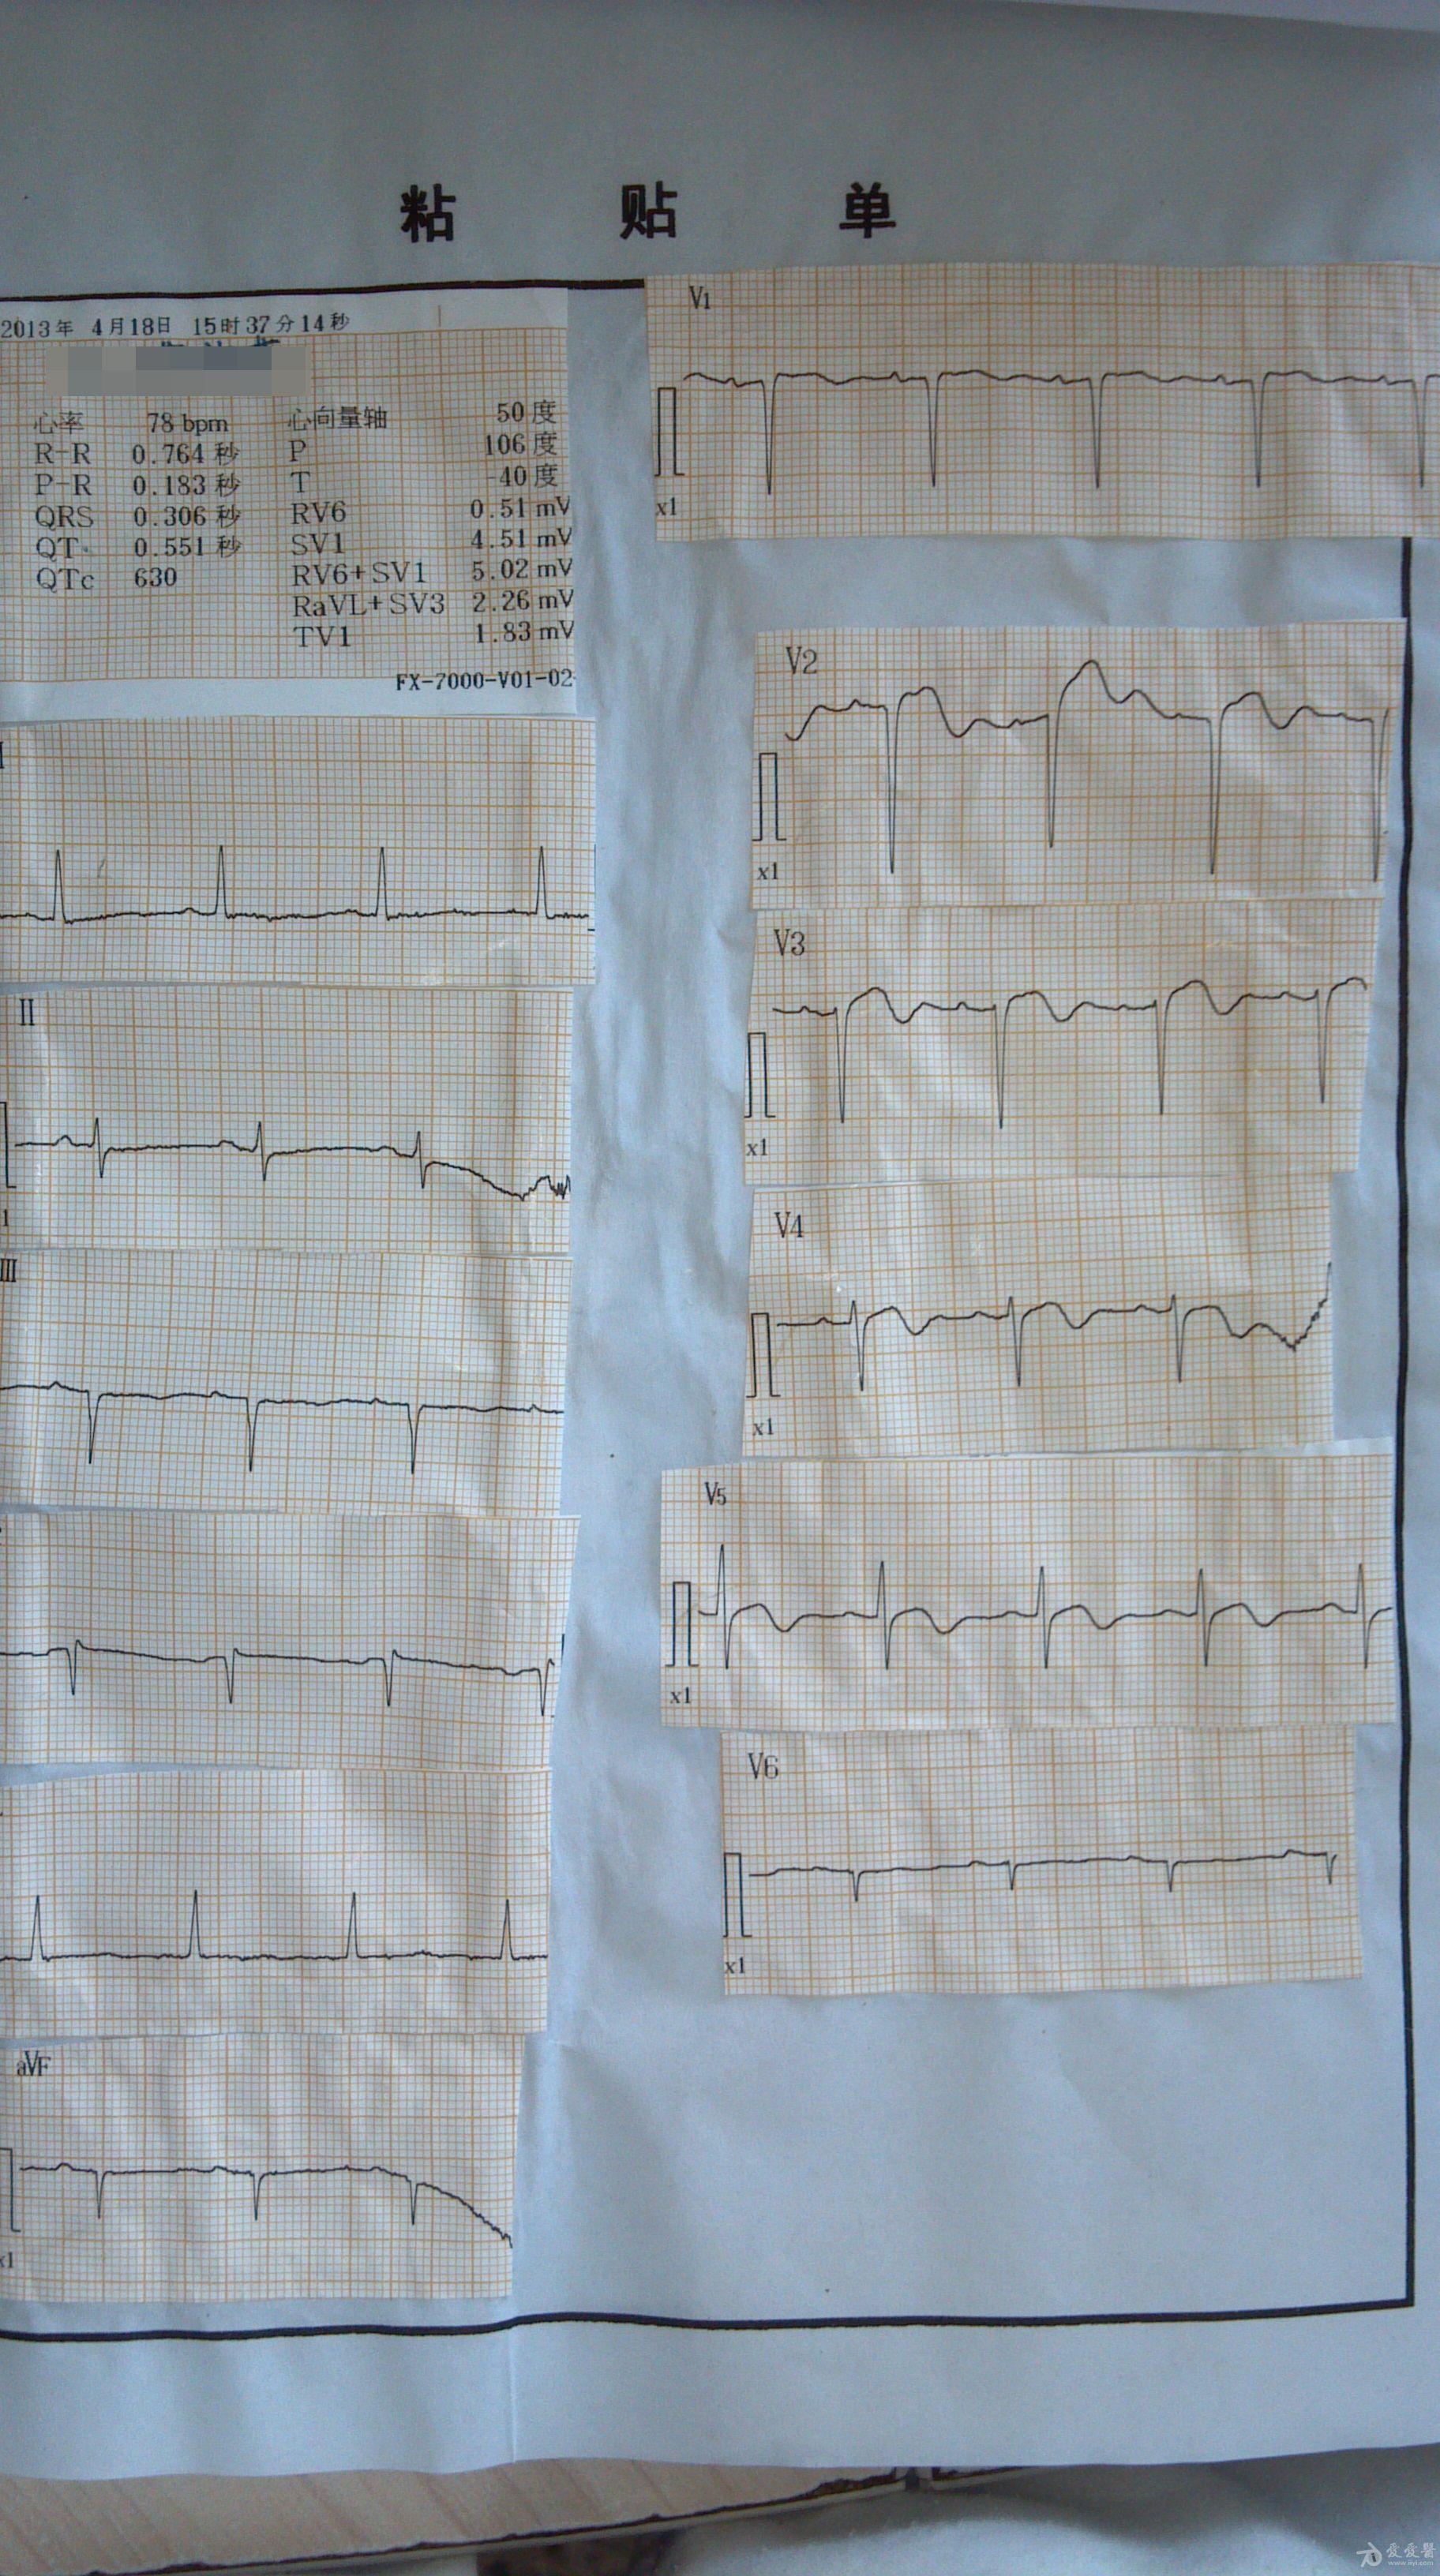 低血糖患者出现典型急性心梗心电图却无临床症状